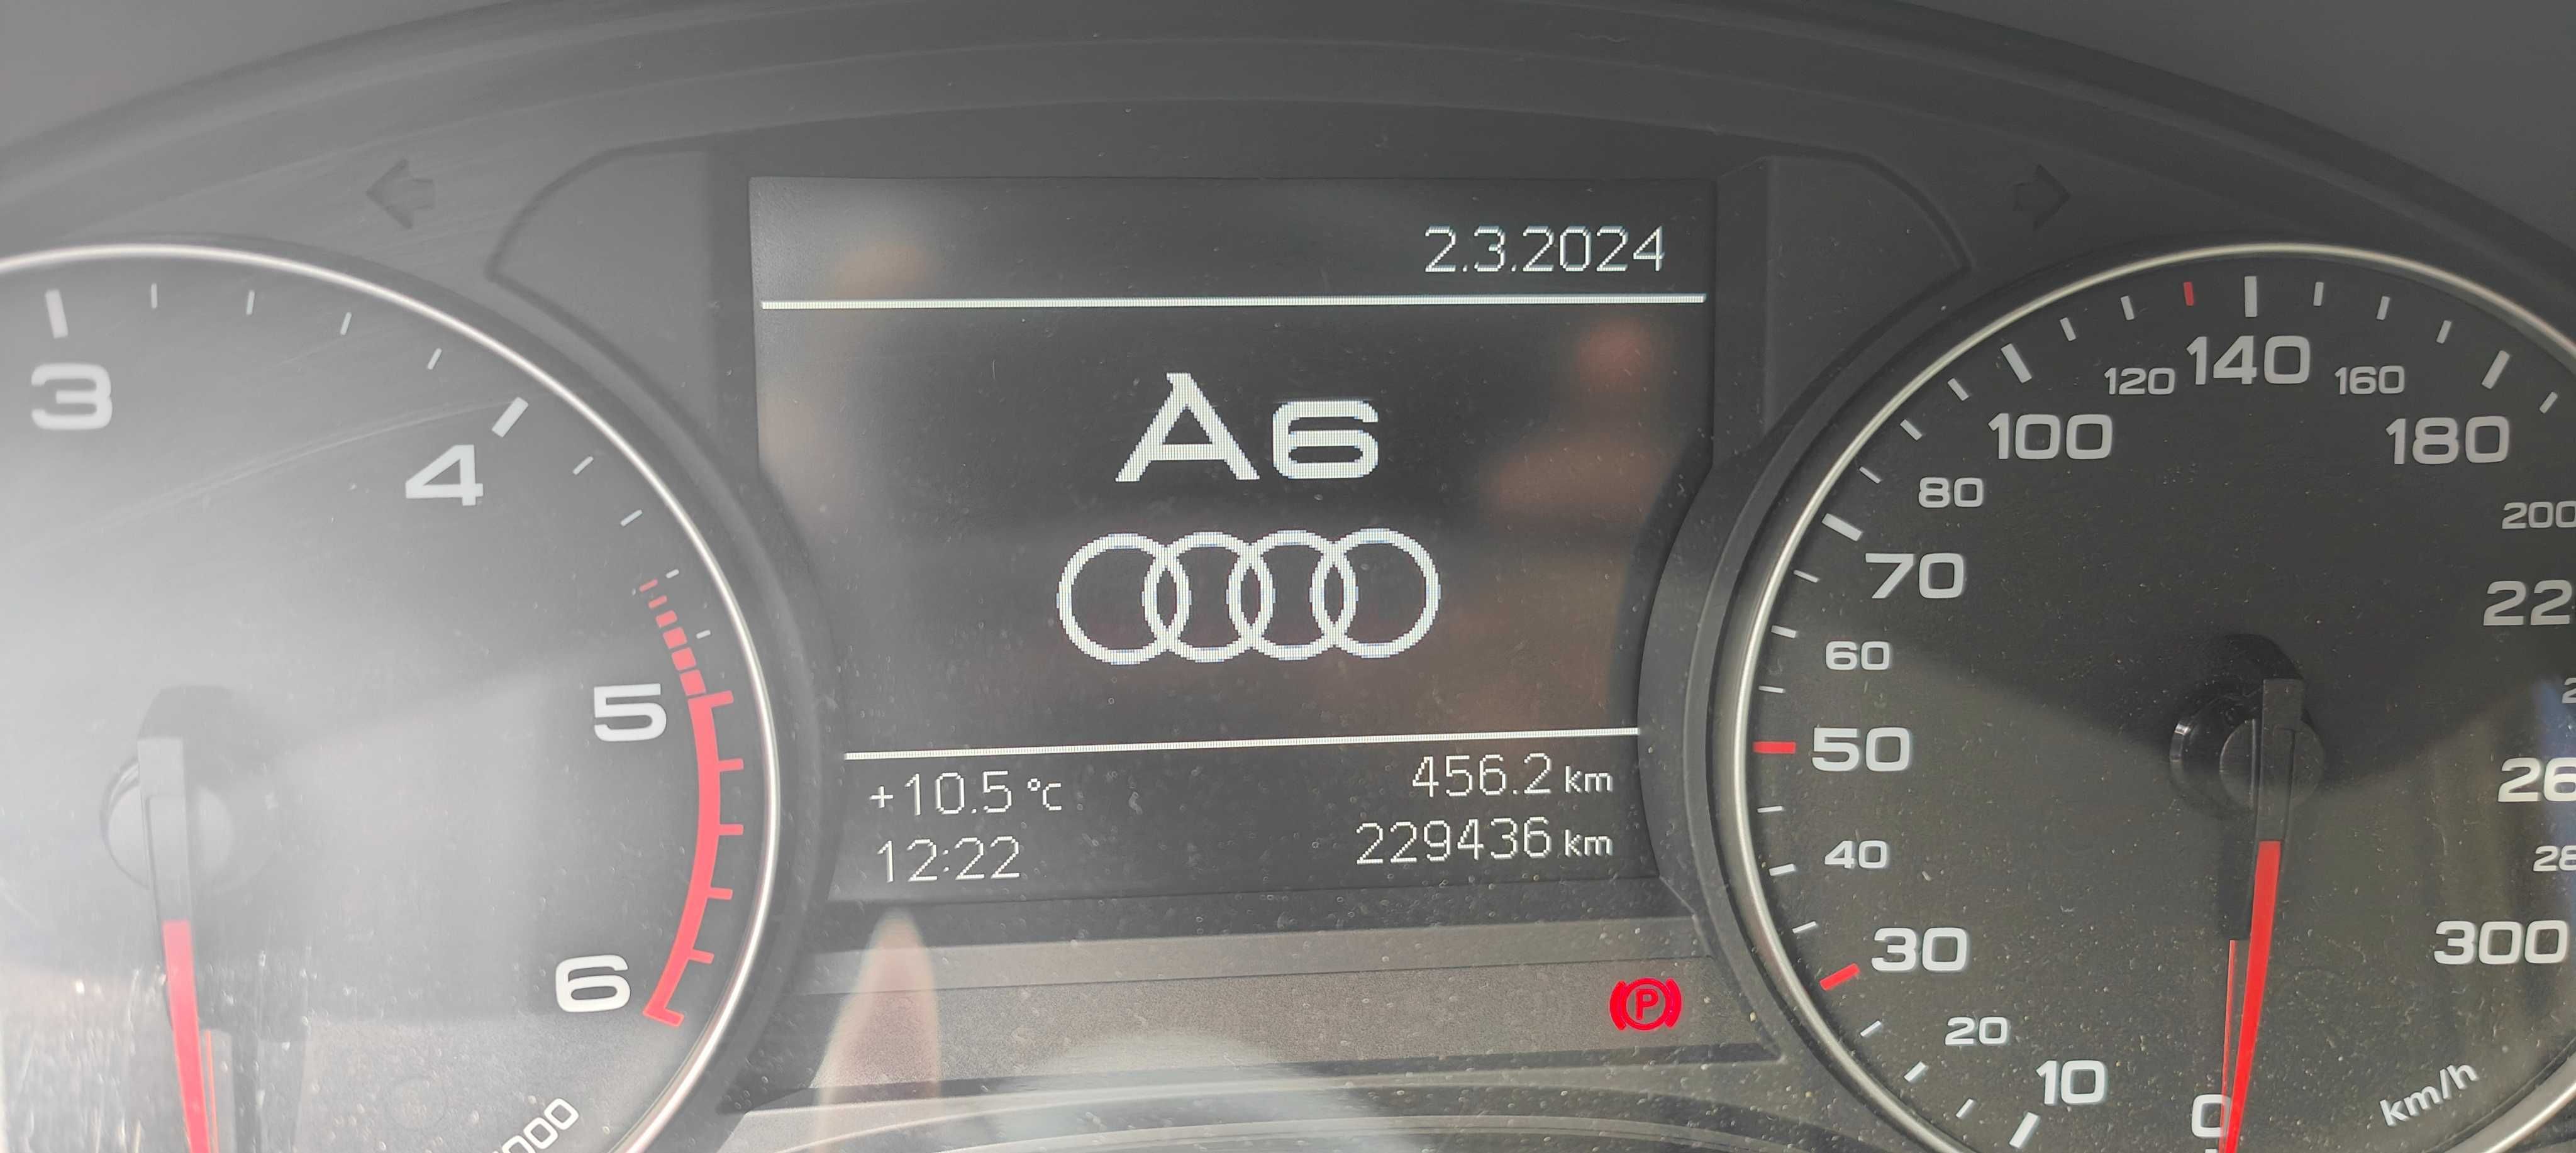 Vând Audi A6 C7 TDI 190 CP